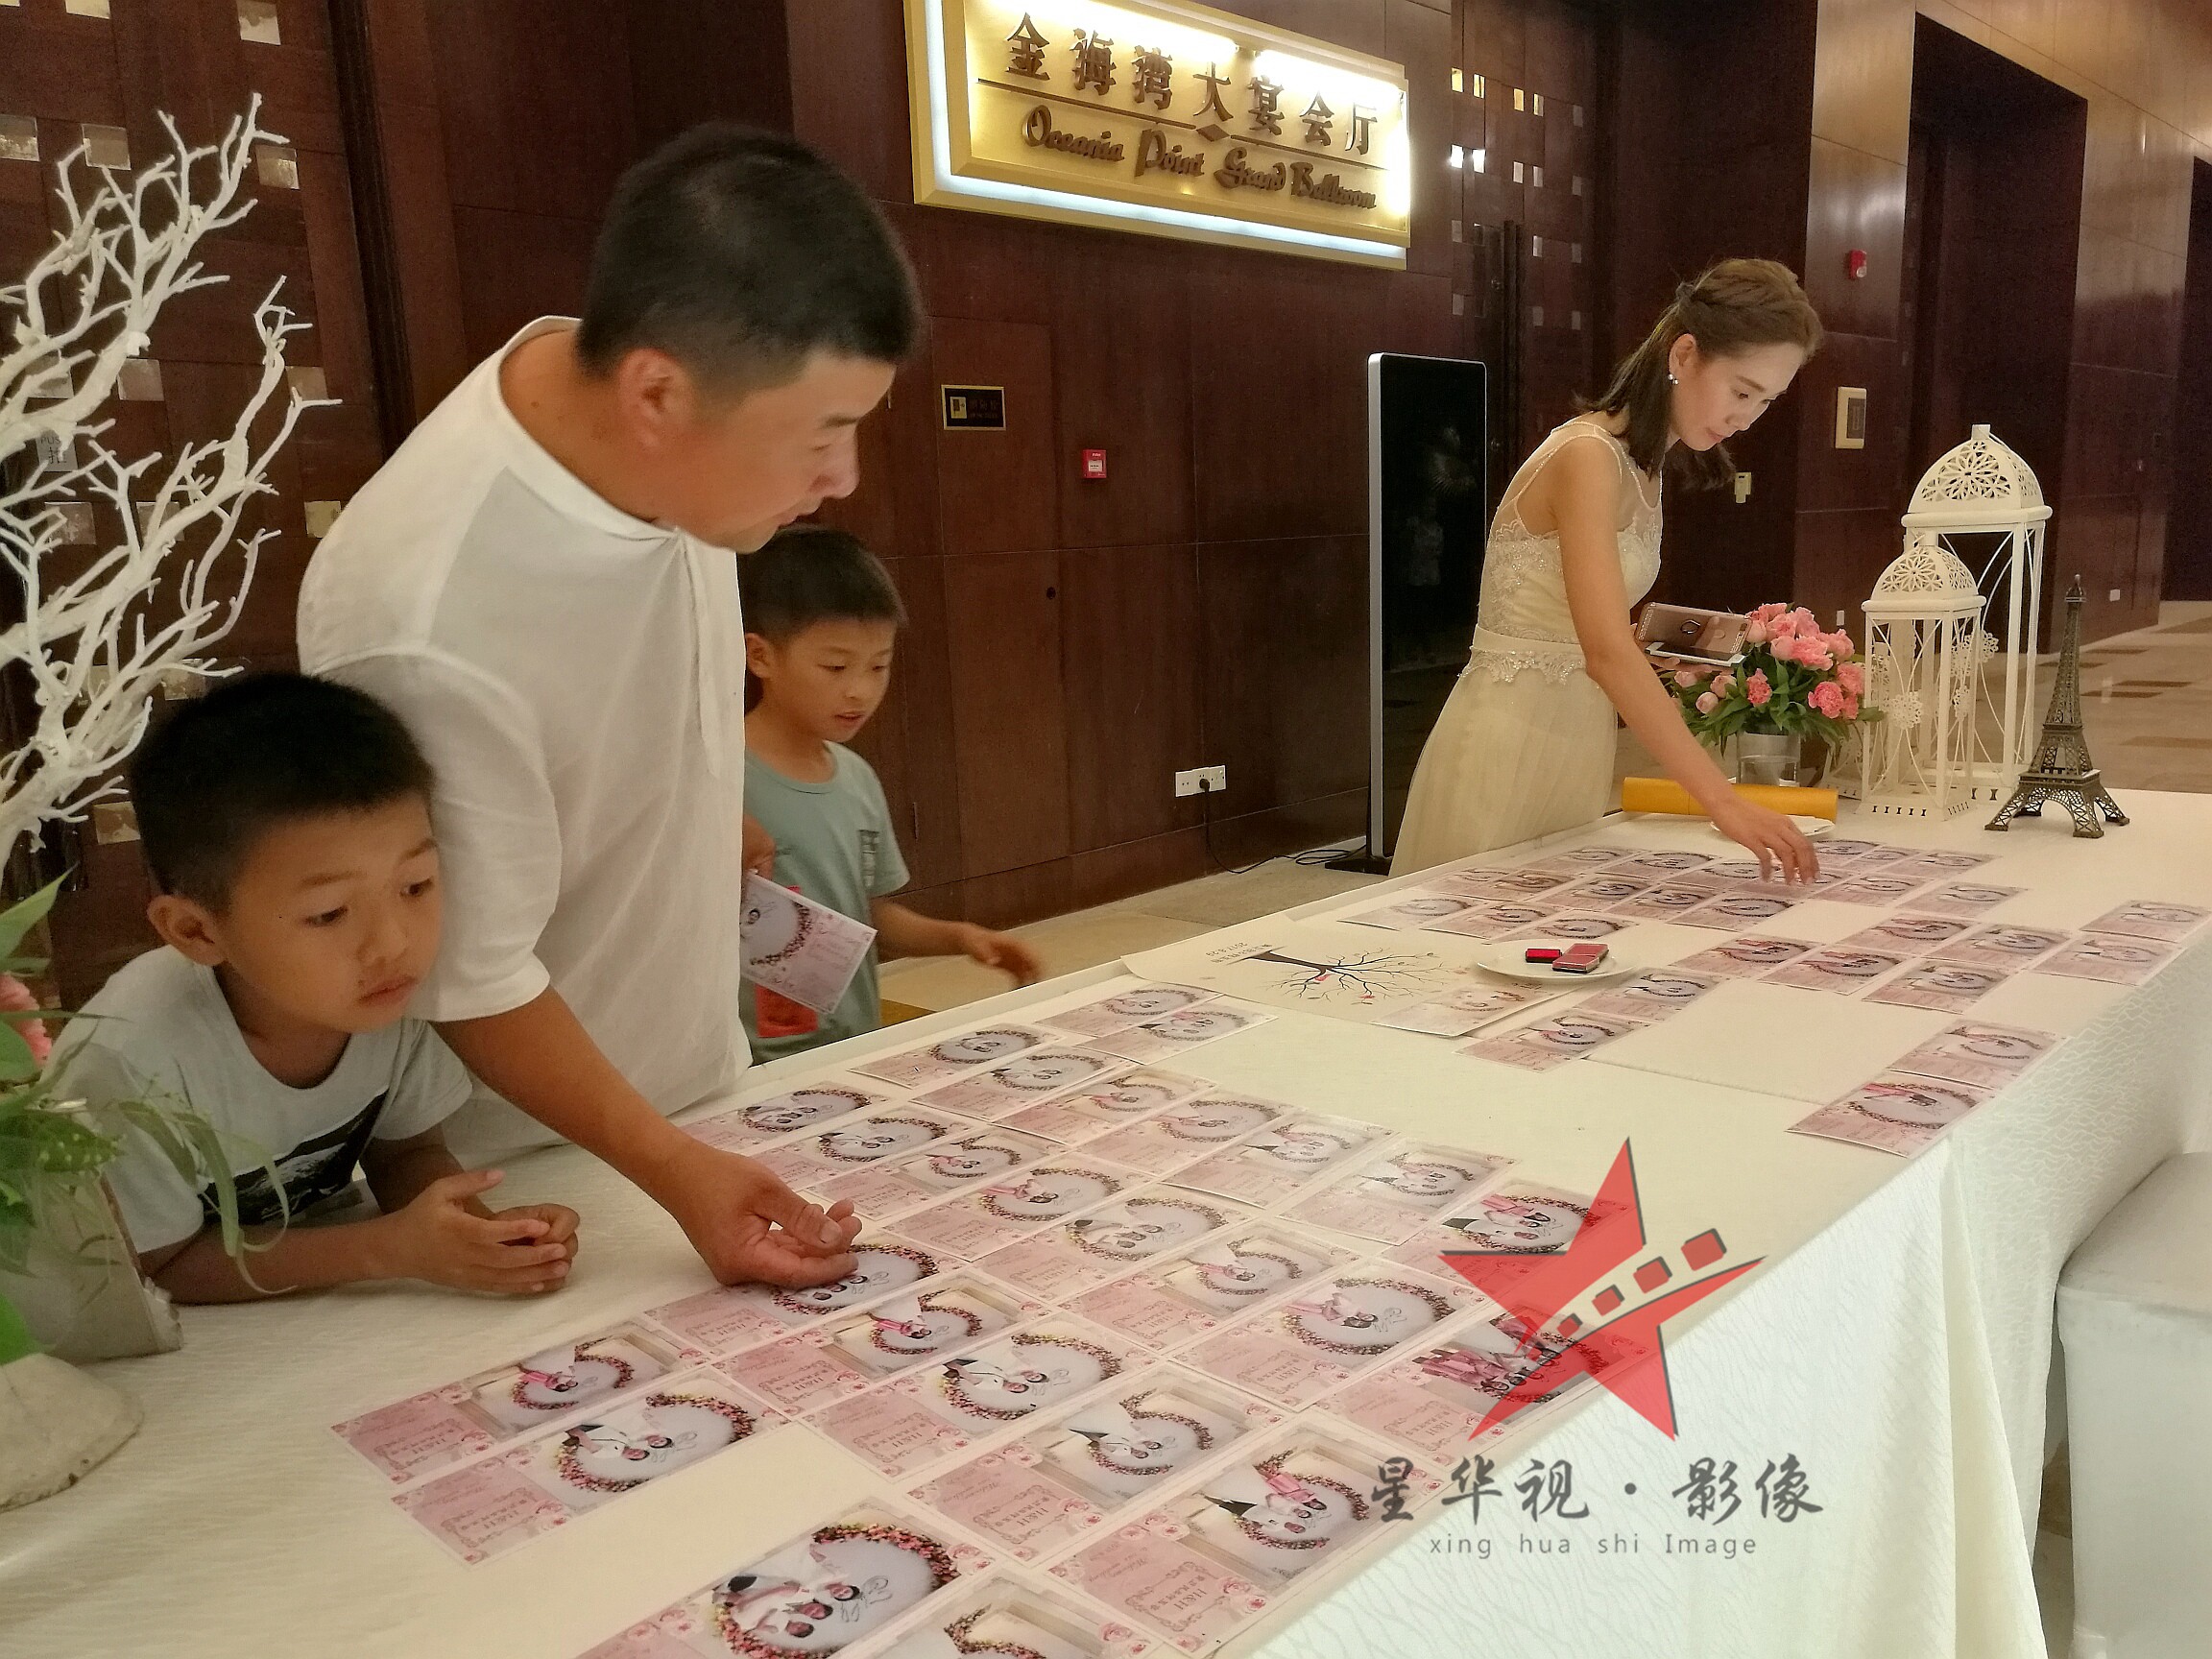 深圳婚礼、年会、活动、会议拍摄 现场打印相片